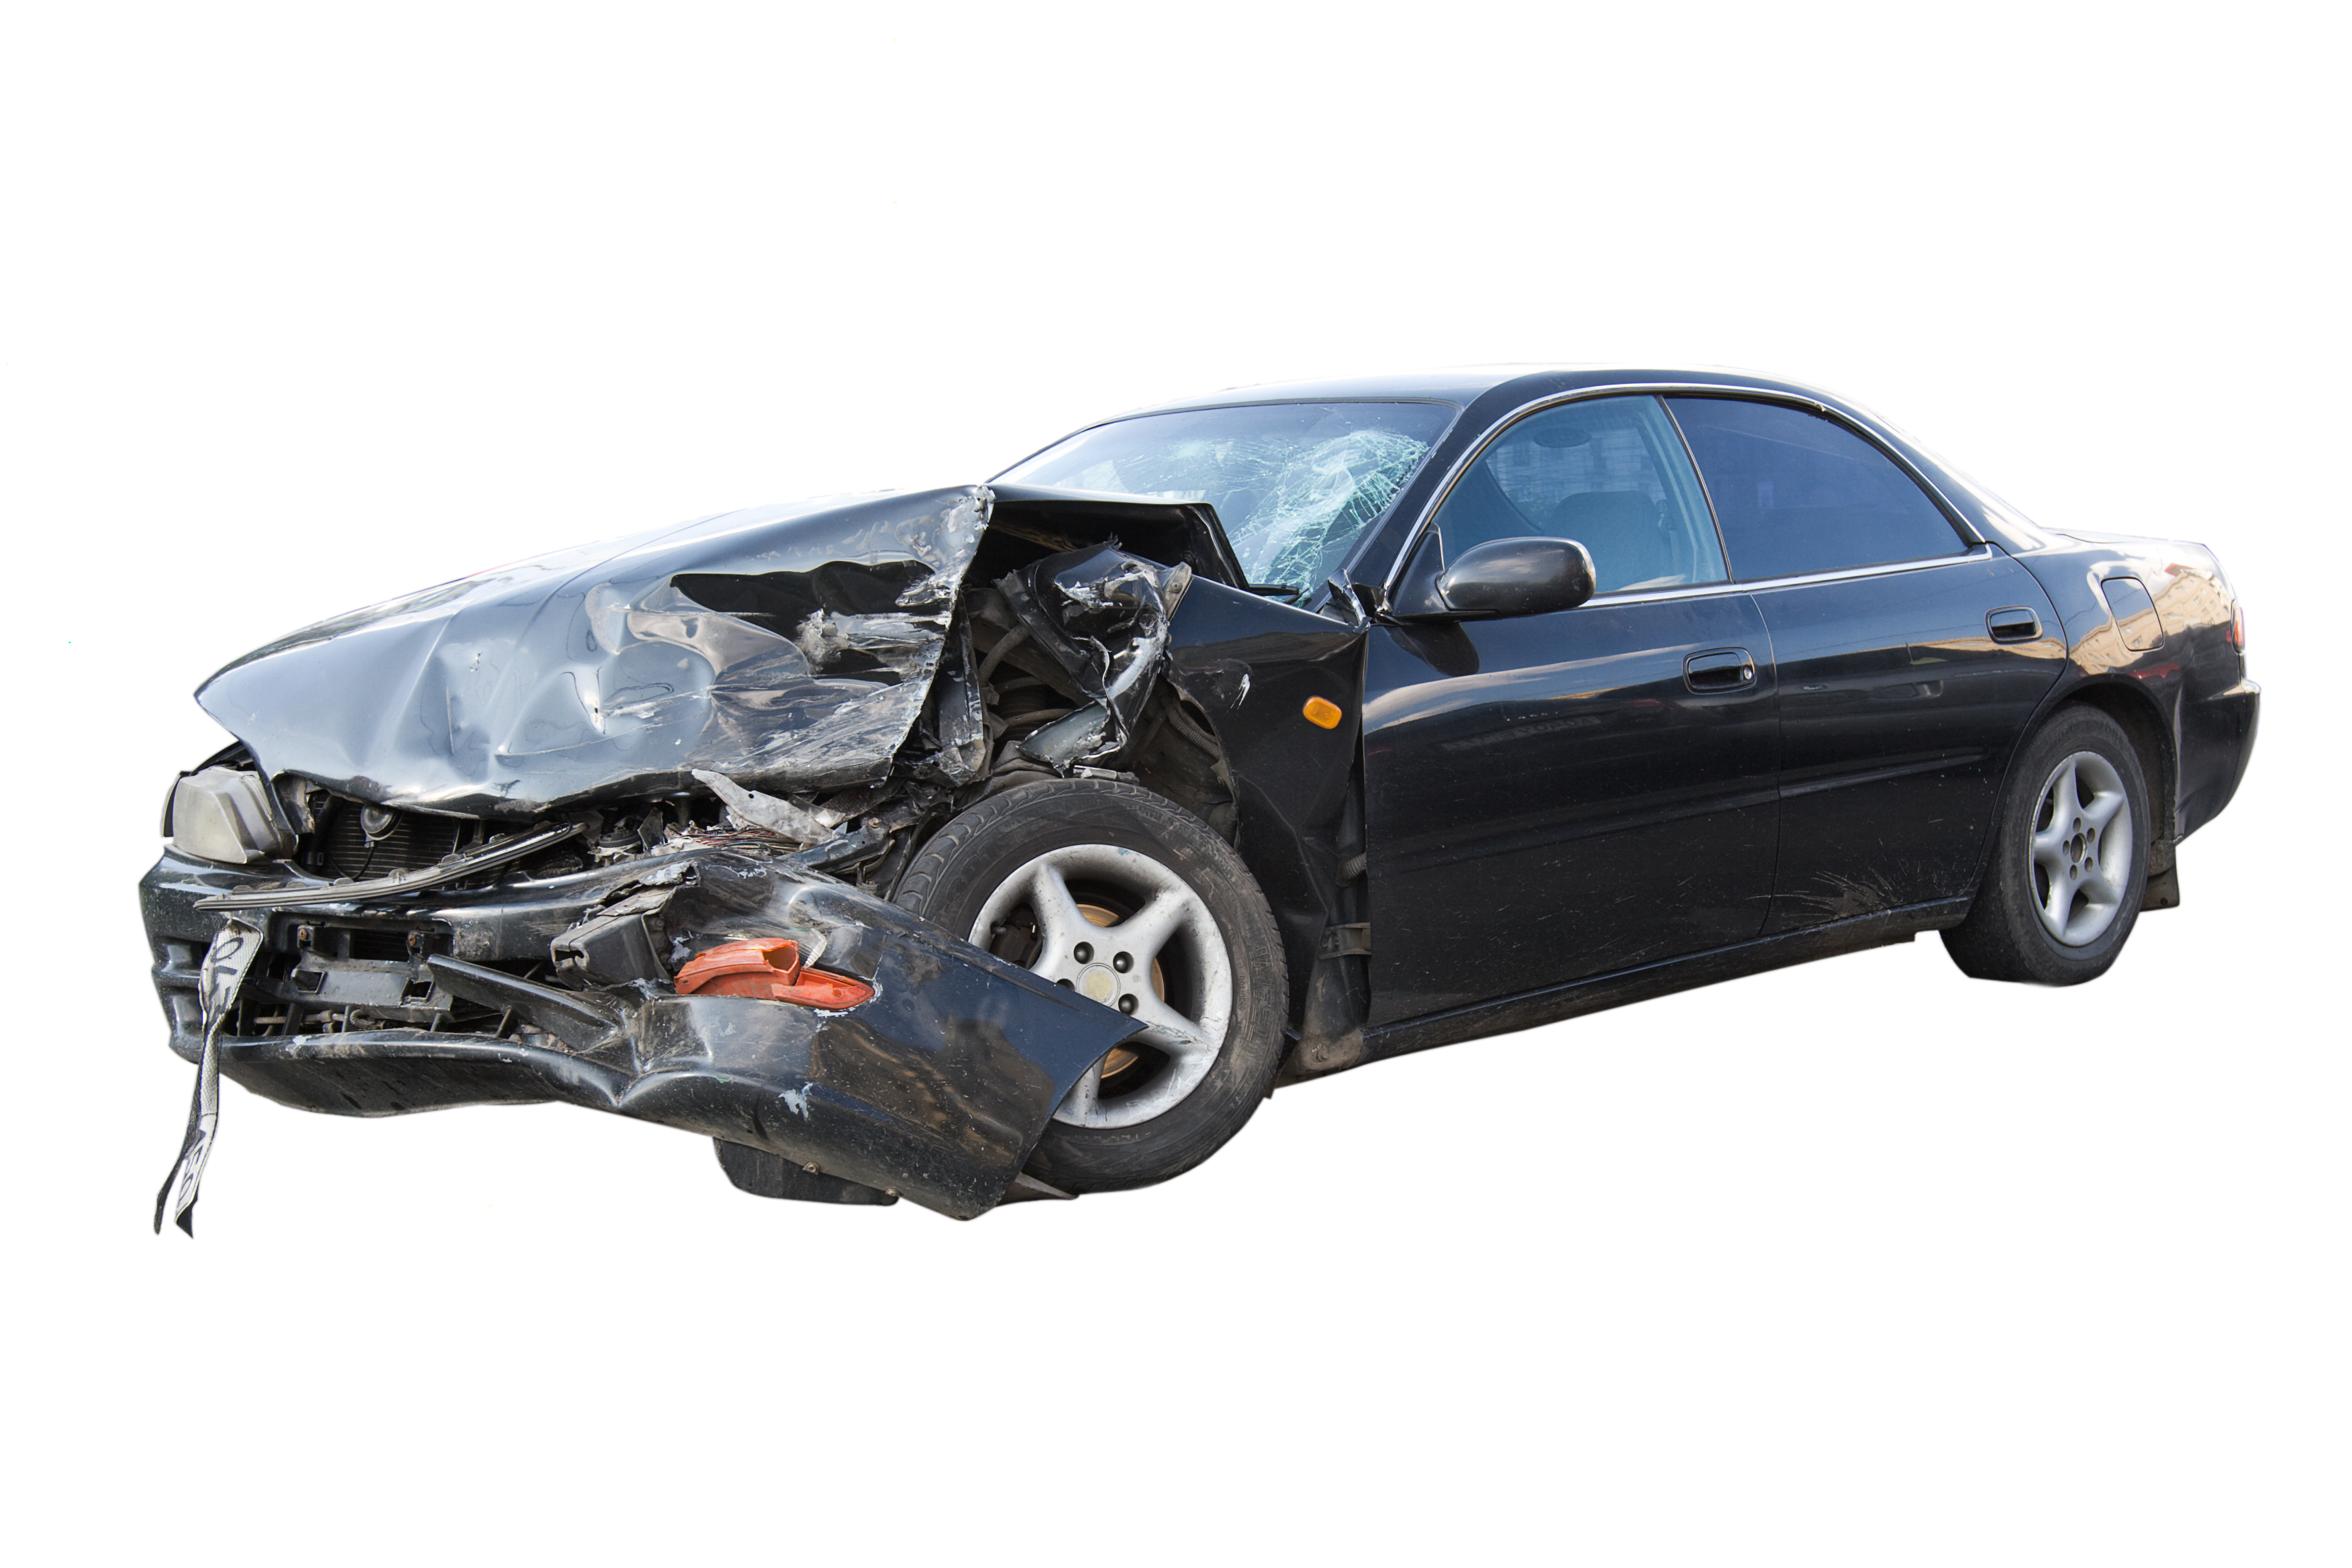 Une voiture gravement endommagée. | Source : Shutterstock